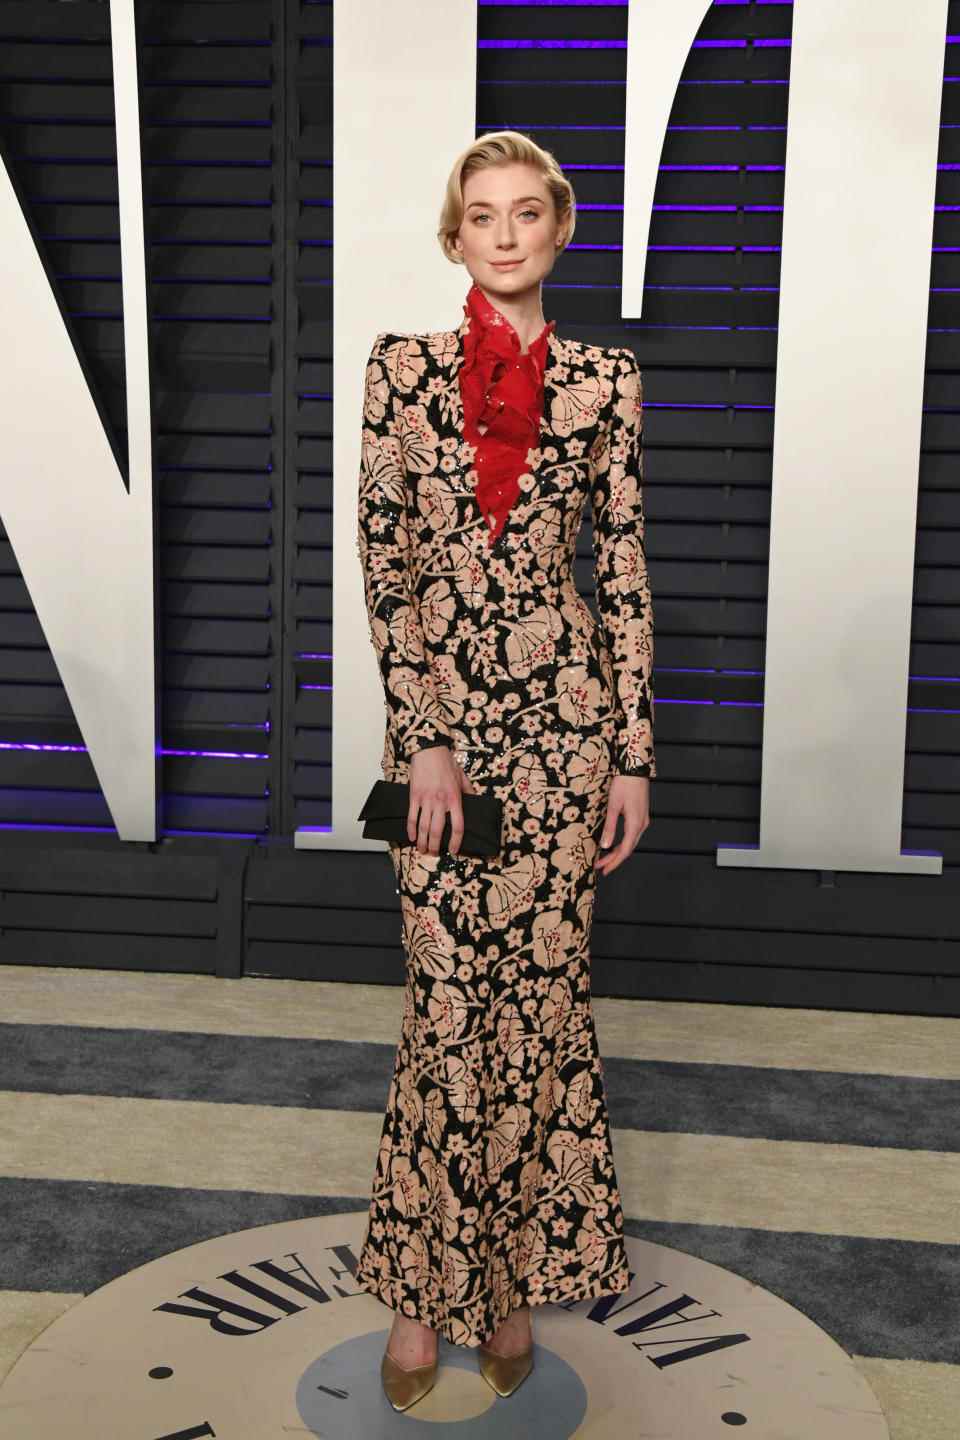 Une photo d'Elizabeth Debicki portant une robe à fleurs sur le tapis rouge de la Vanity Fair Oscar Party 2019